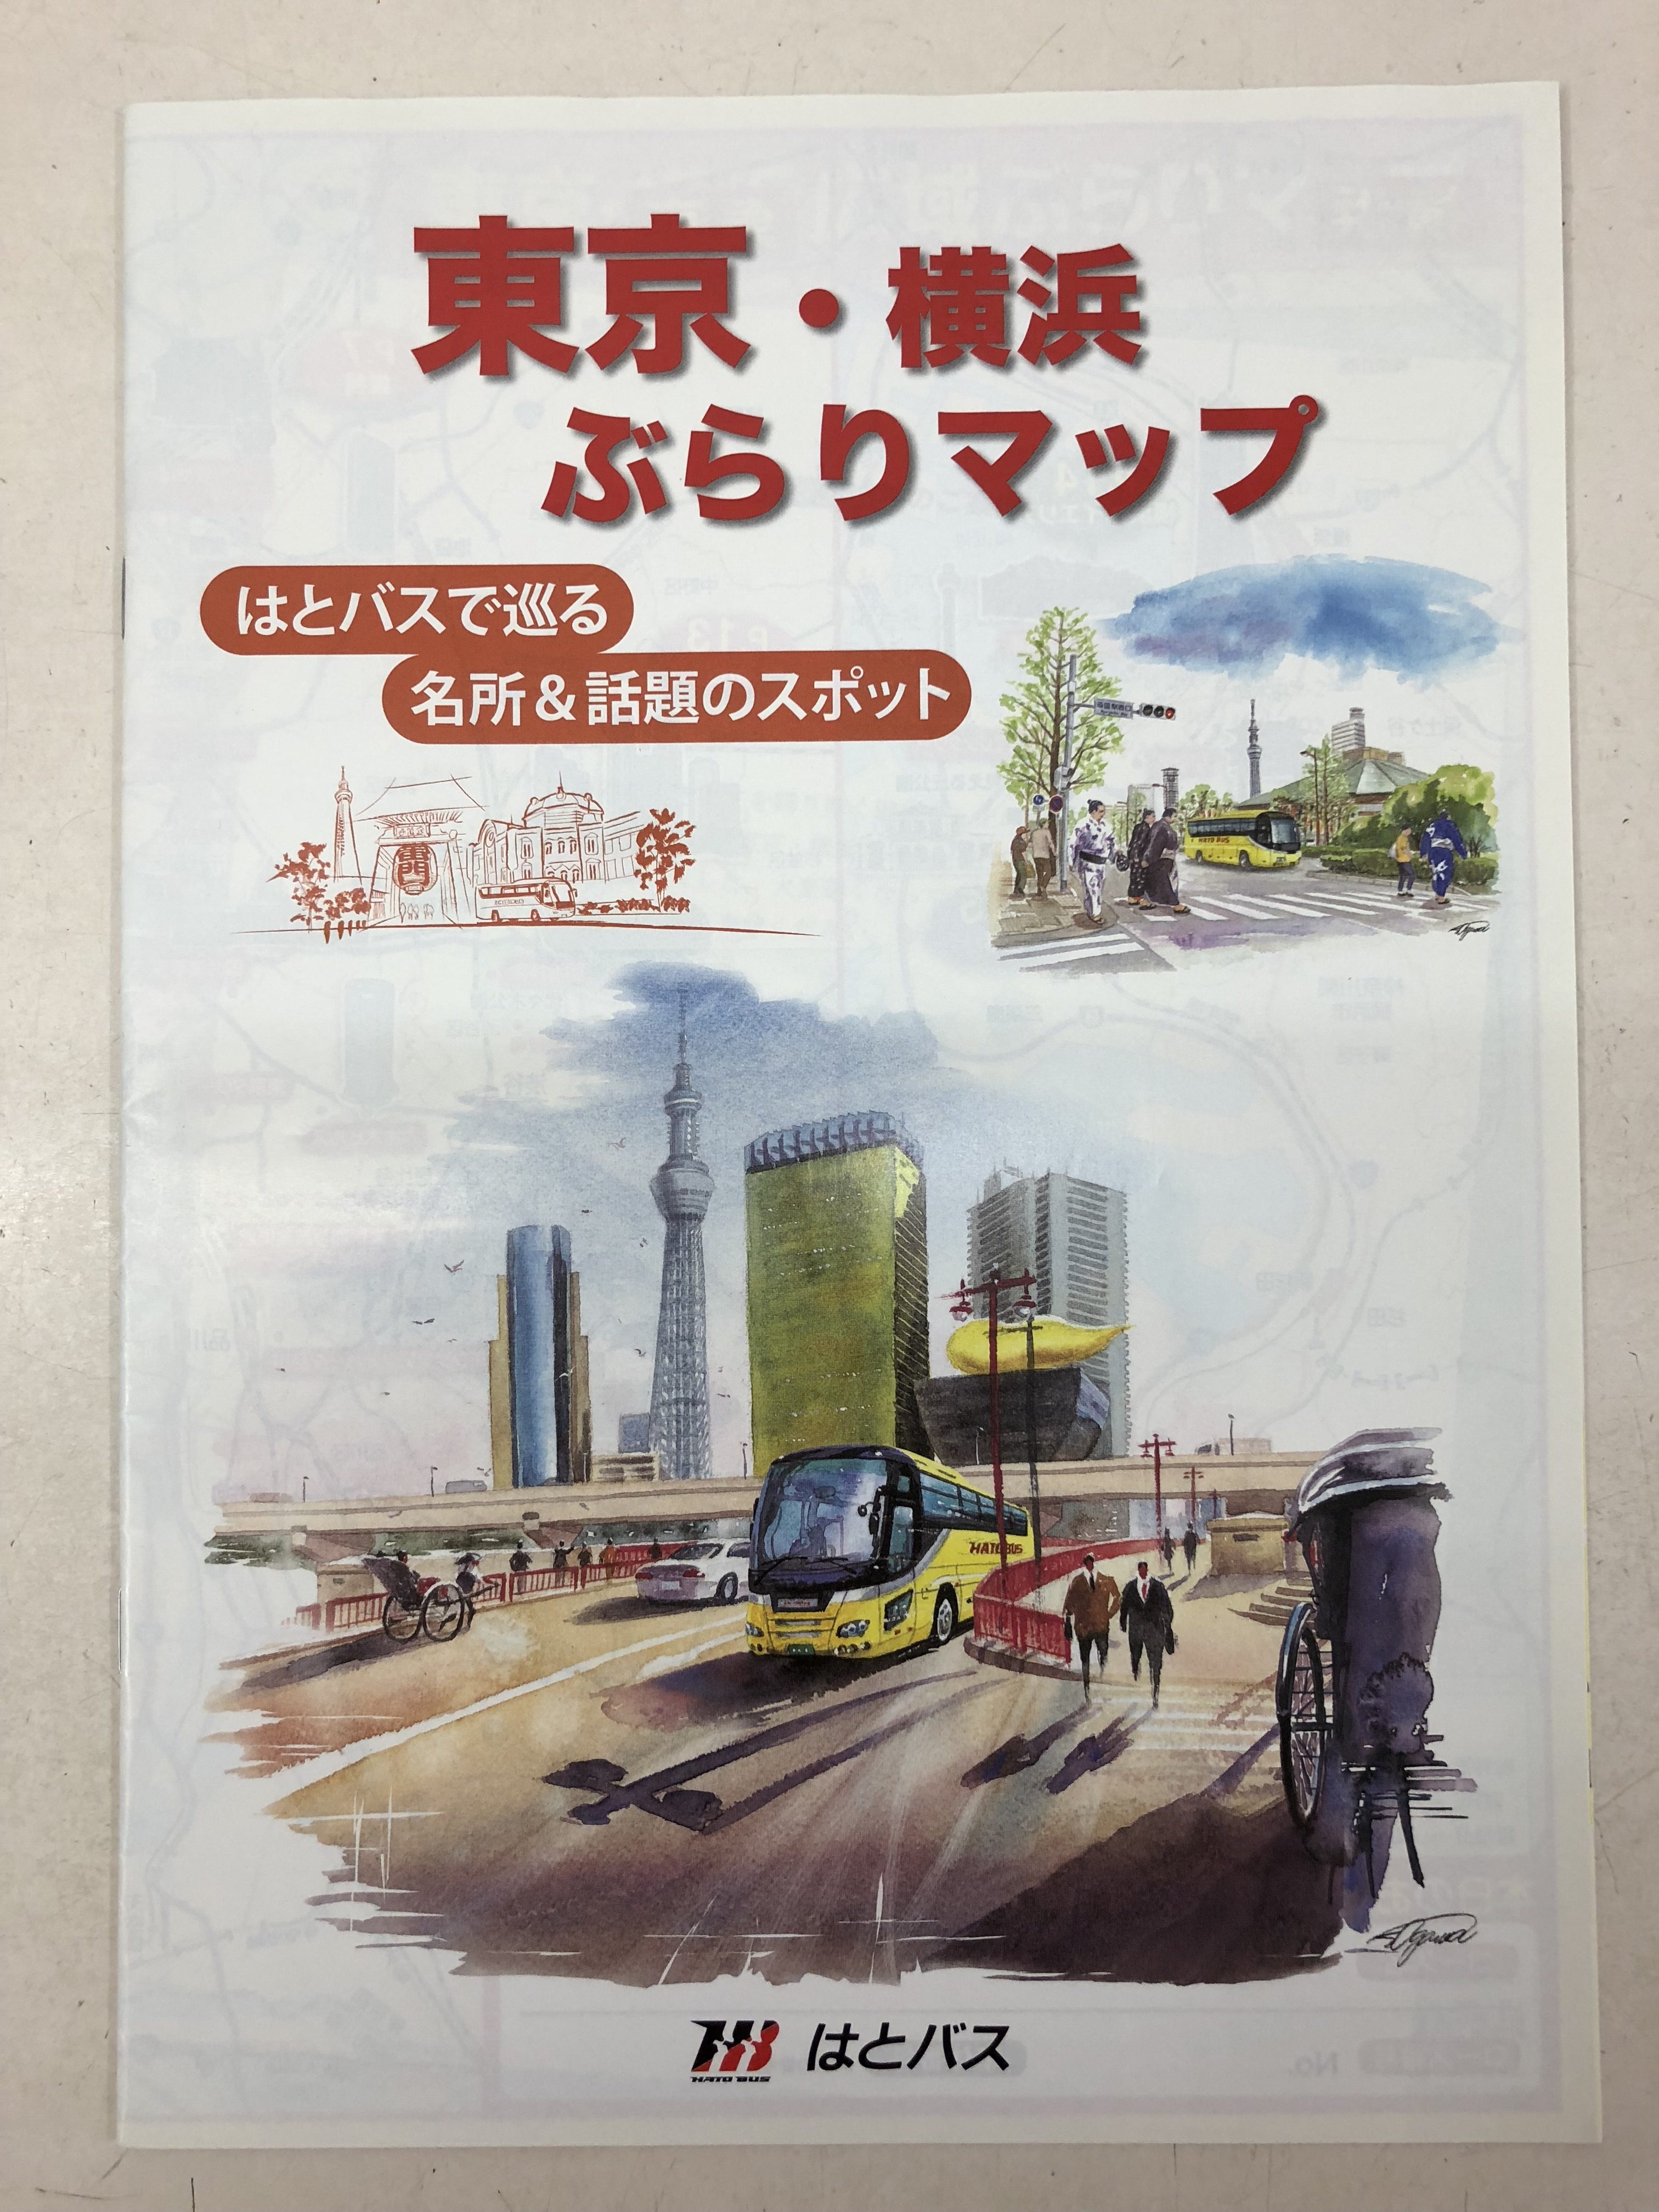 東京 横浜ぶらりマップではとバスで巡る 名所 話題のスポットして掲載されました 浅草 仲見世 大福餅 団子 土産店 喜久屋 の公式サイト